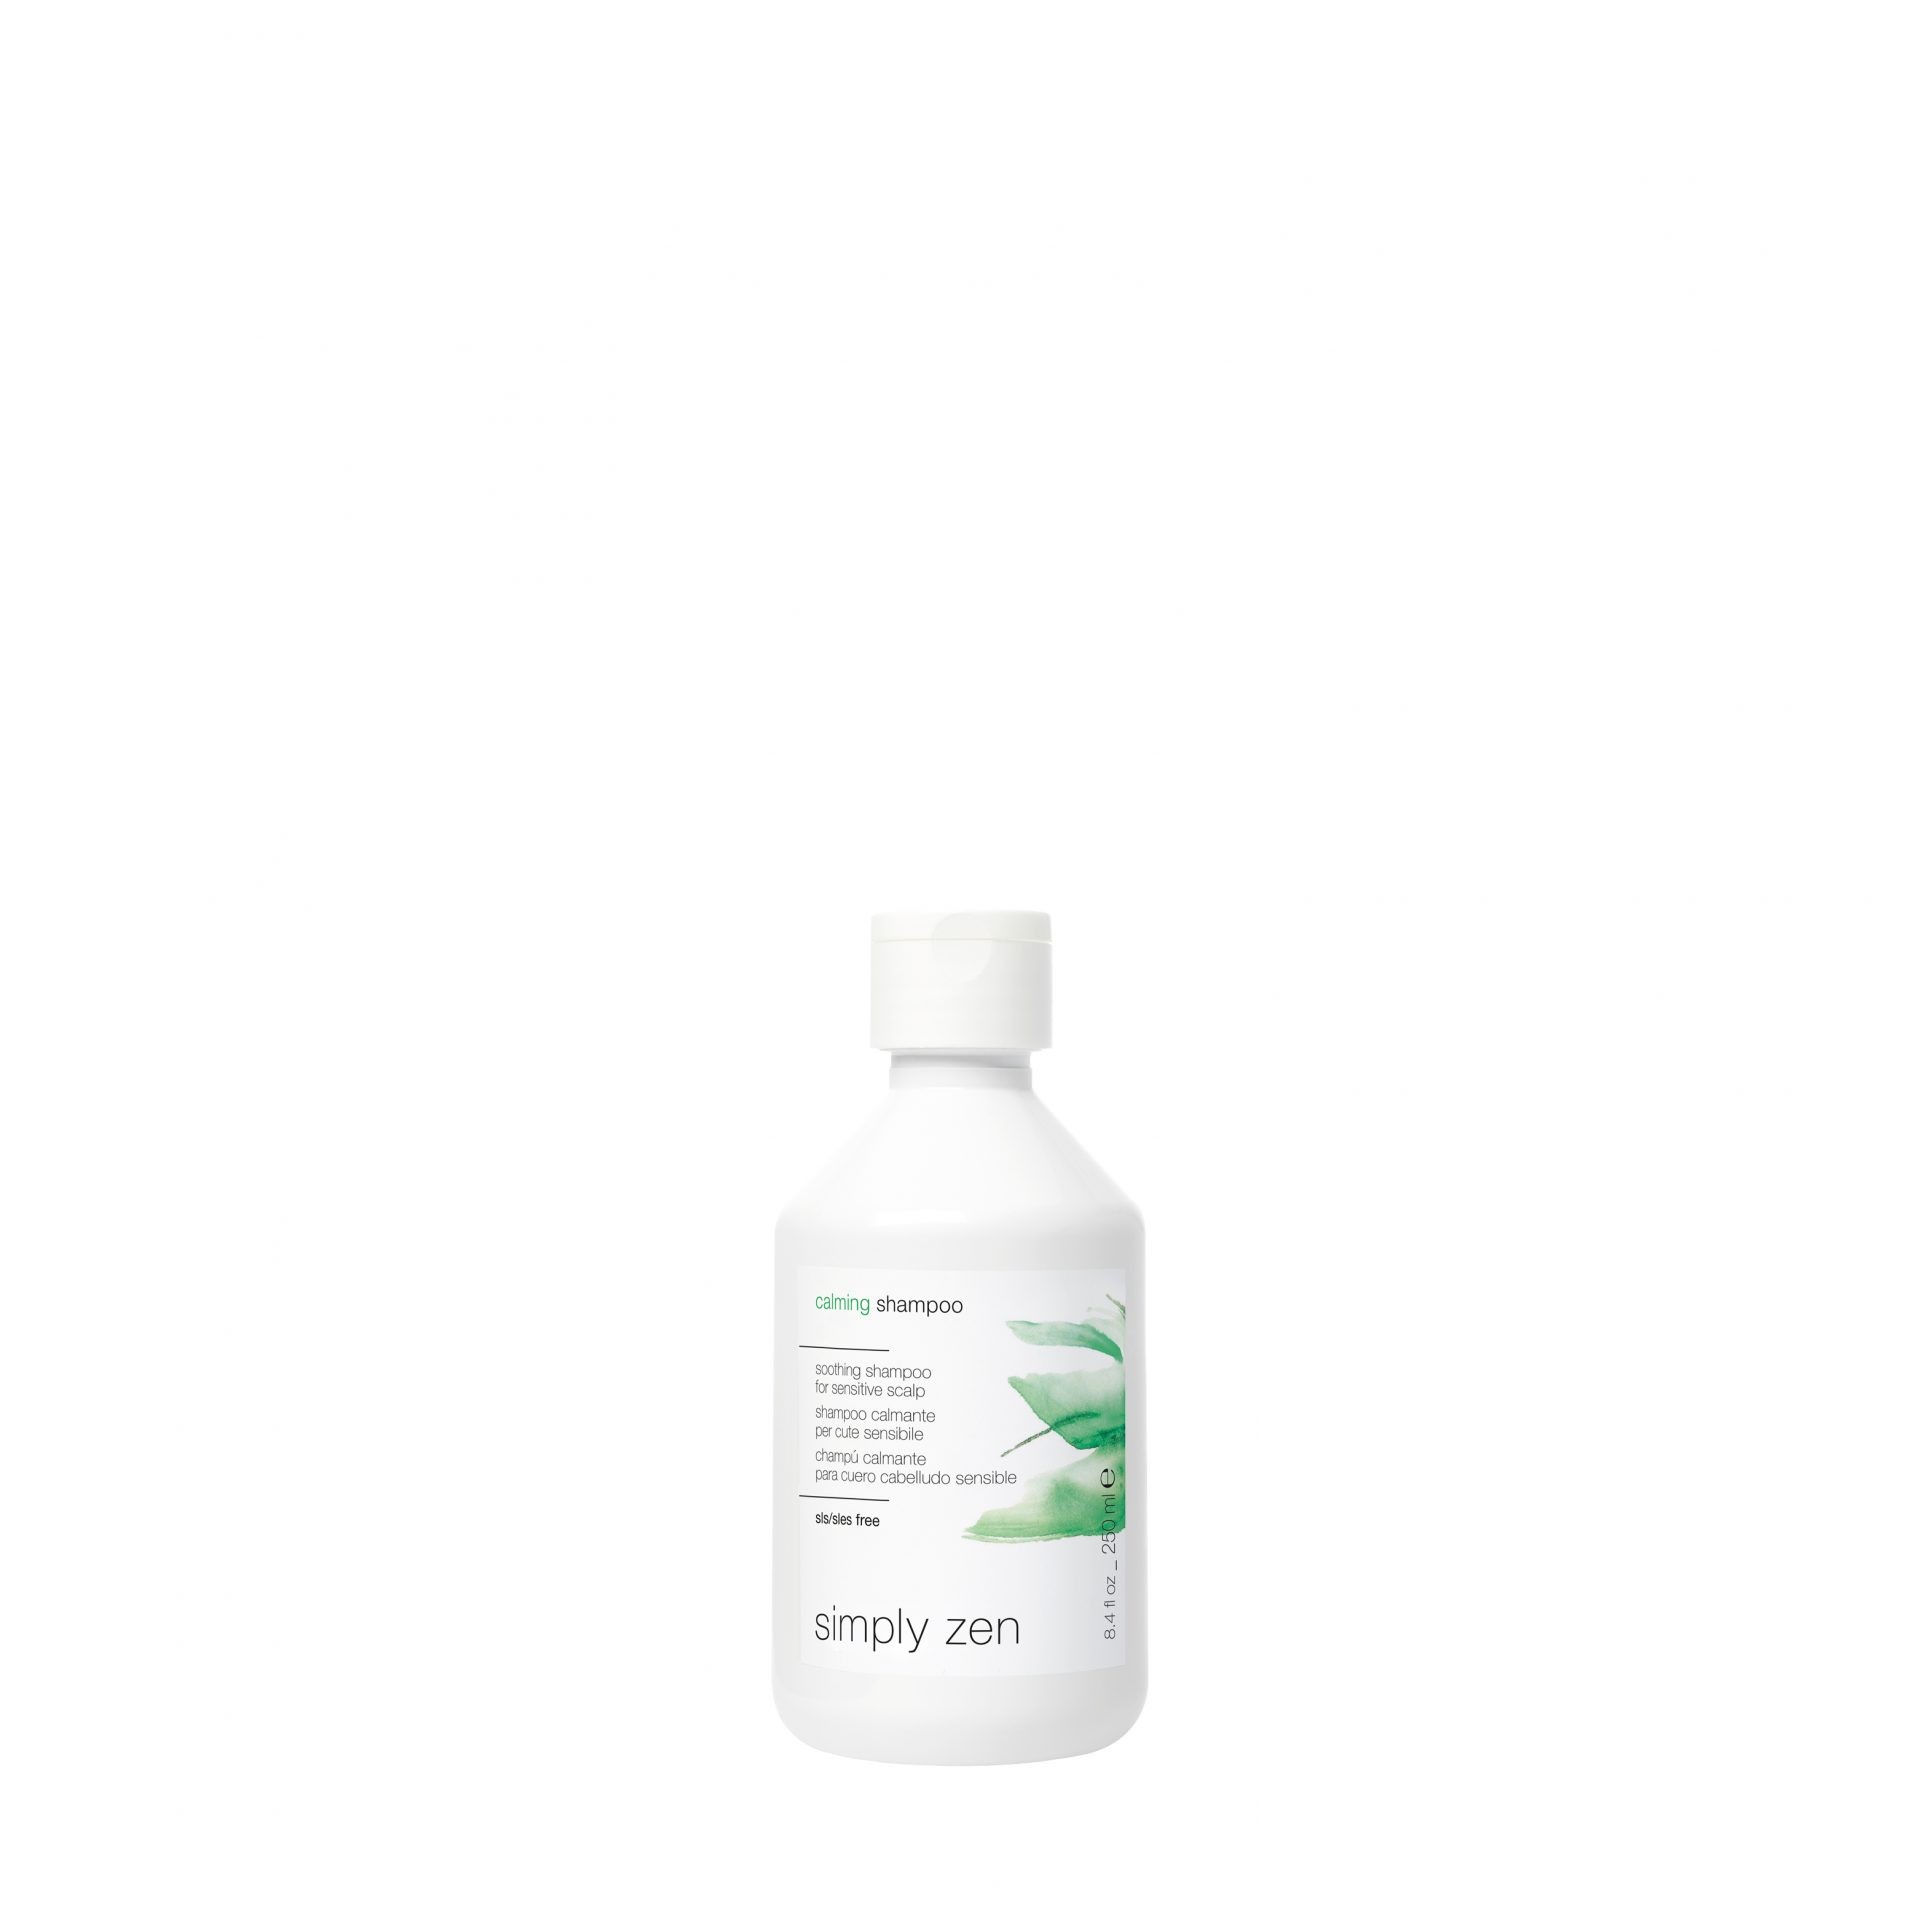 7 IMG SZ singole prodotti 1500x1500px 72 DPI calming shampoo